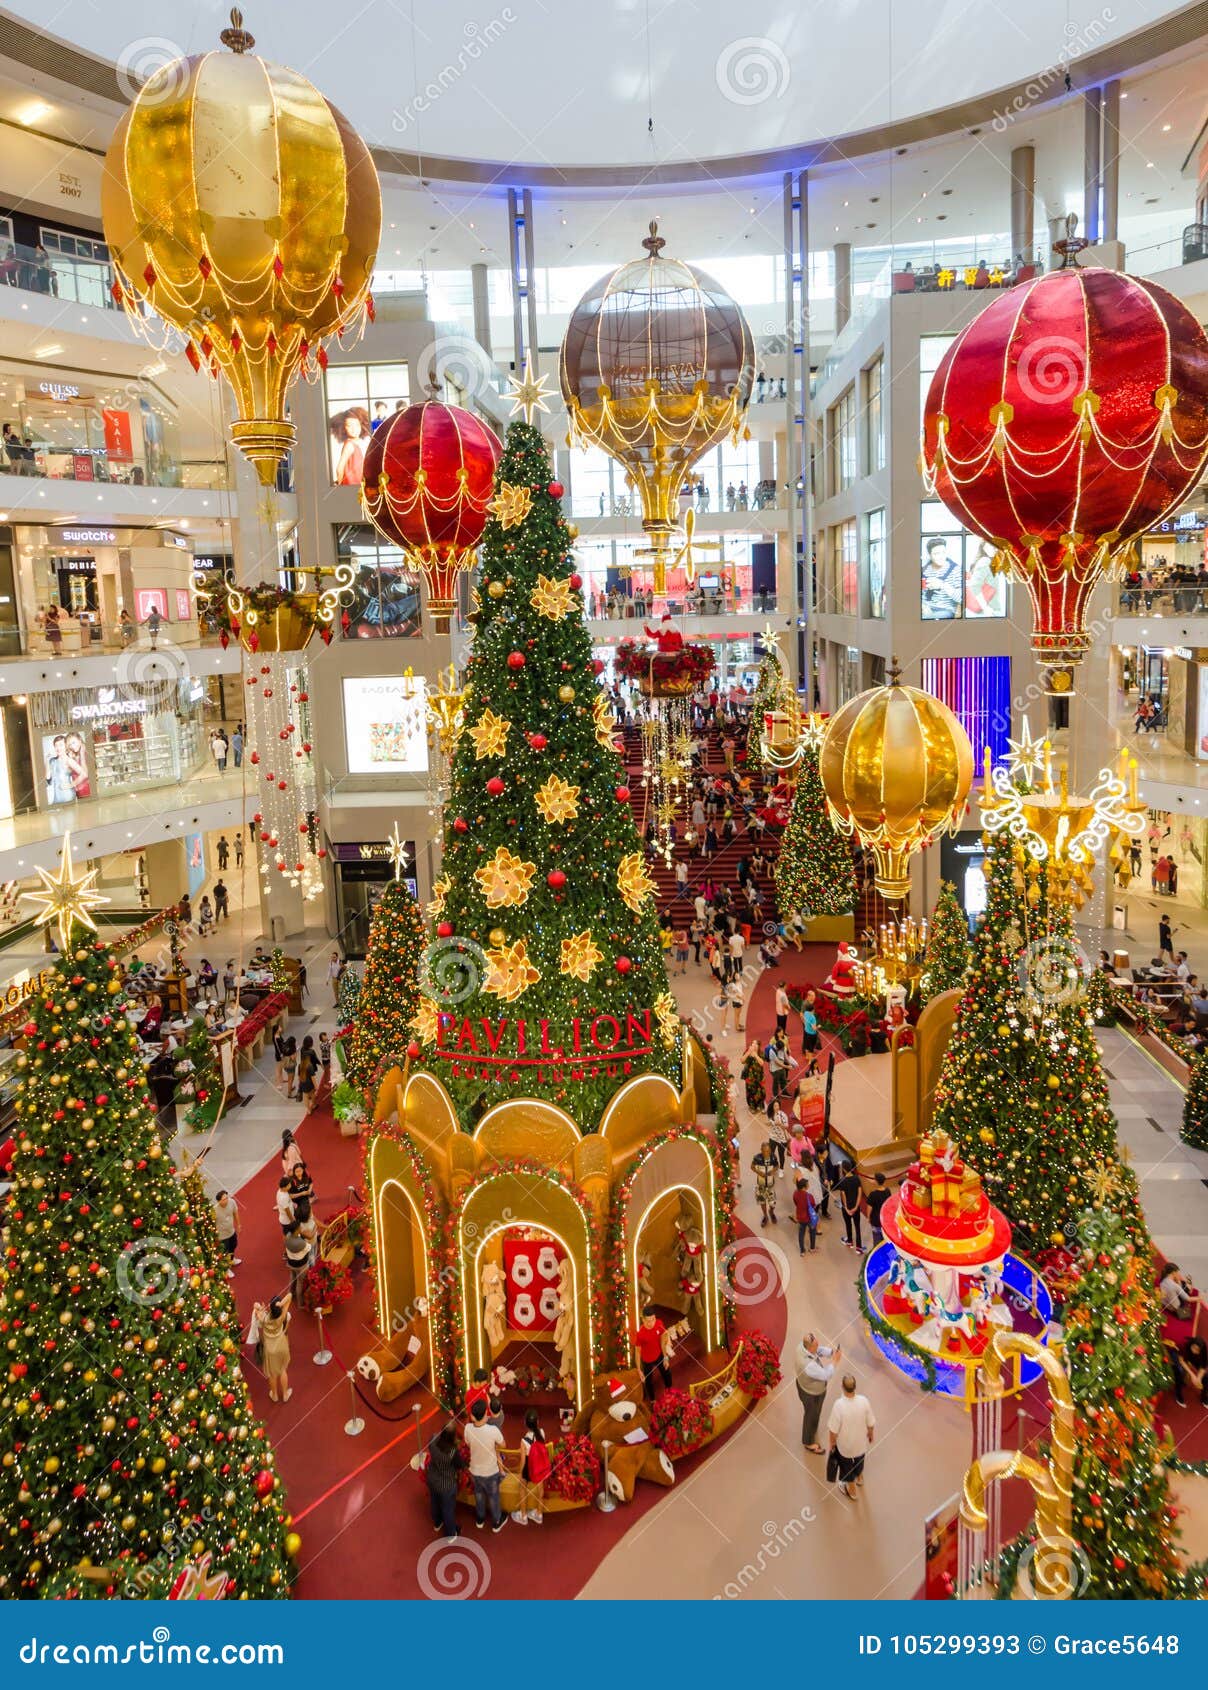 Christmas In Kuala Lumpur 2016 / Christmas Wishes  Christmas in Kuala